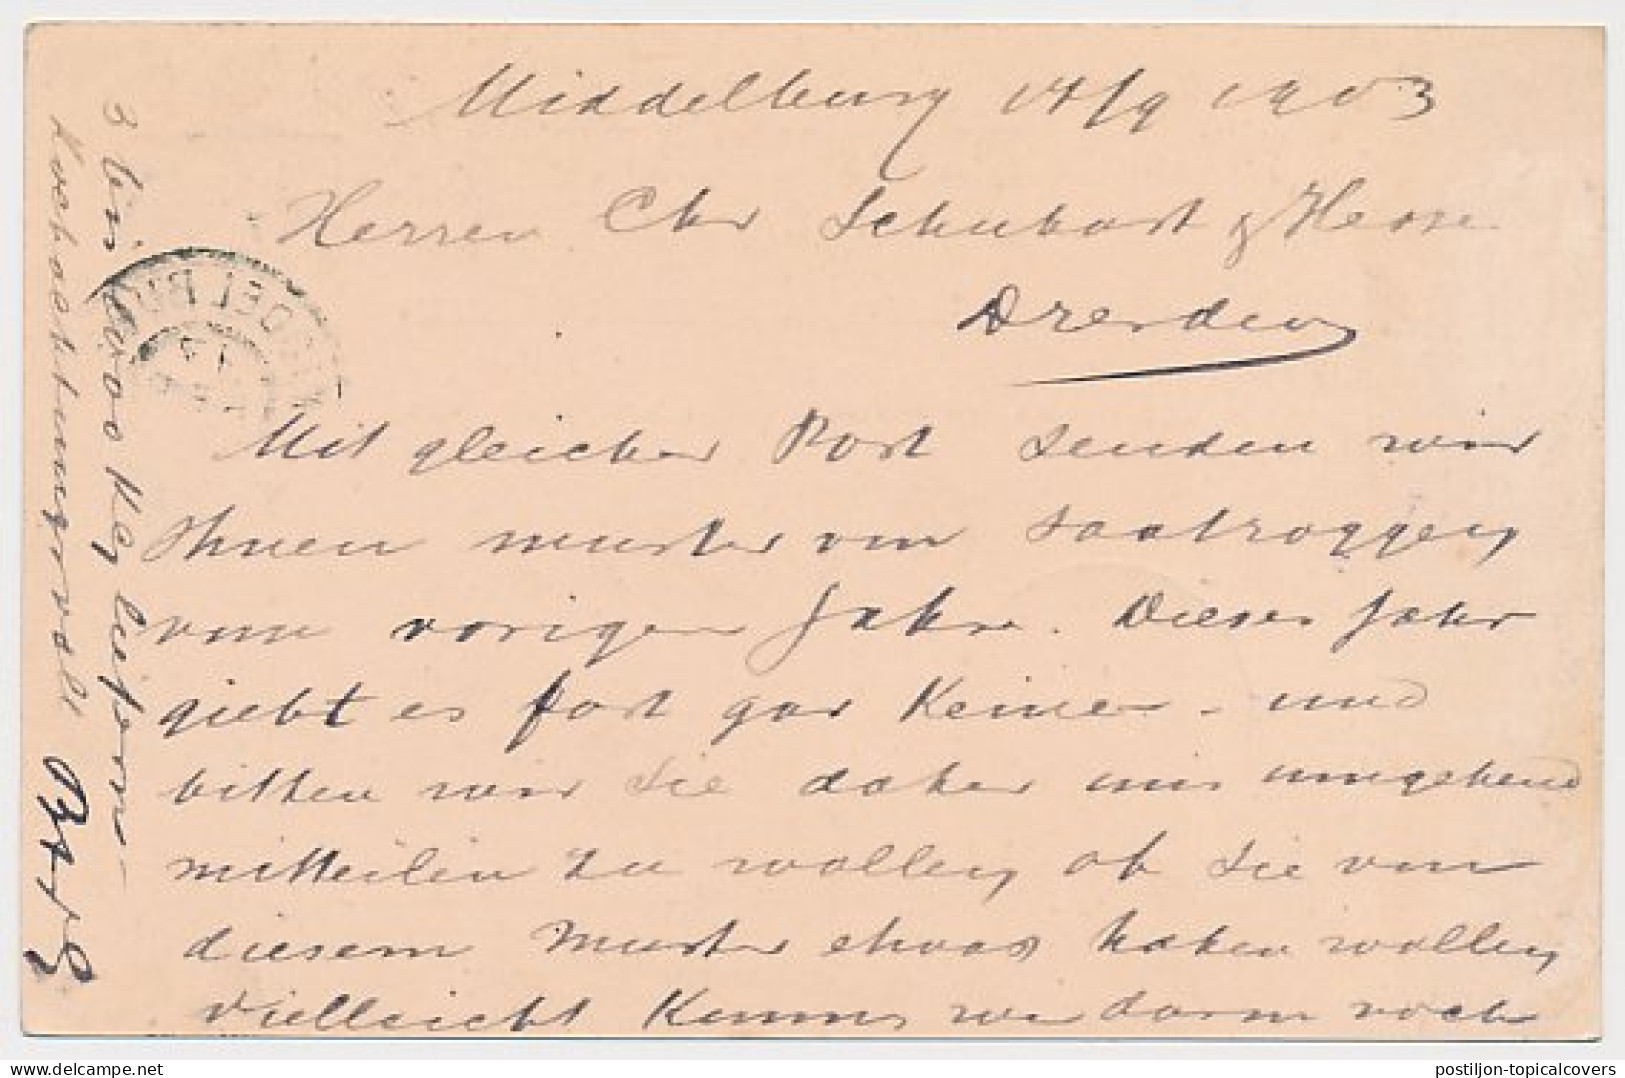 Firma Briefkaart Middelburg 1903 - Bosman En Van Goozen - Unclassified